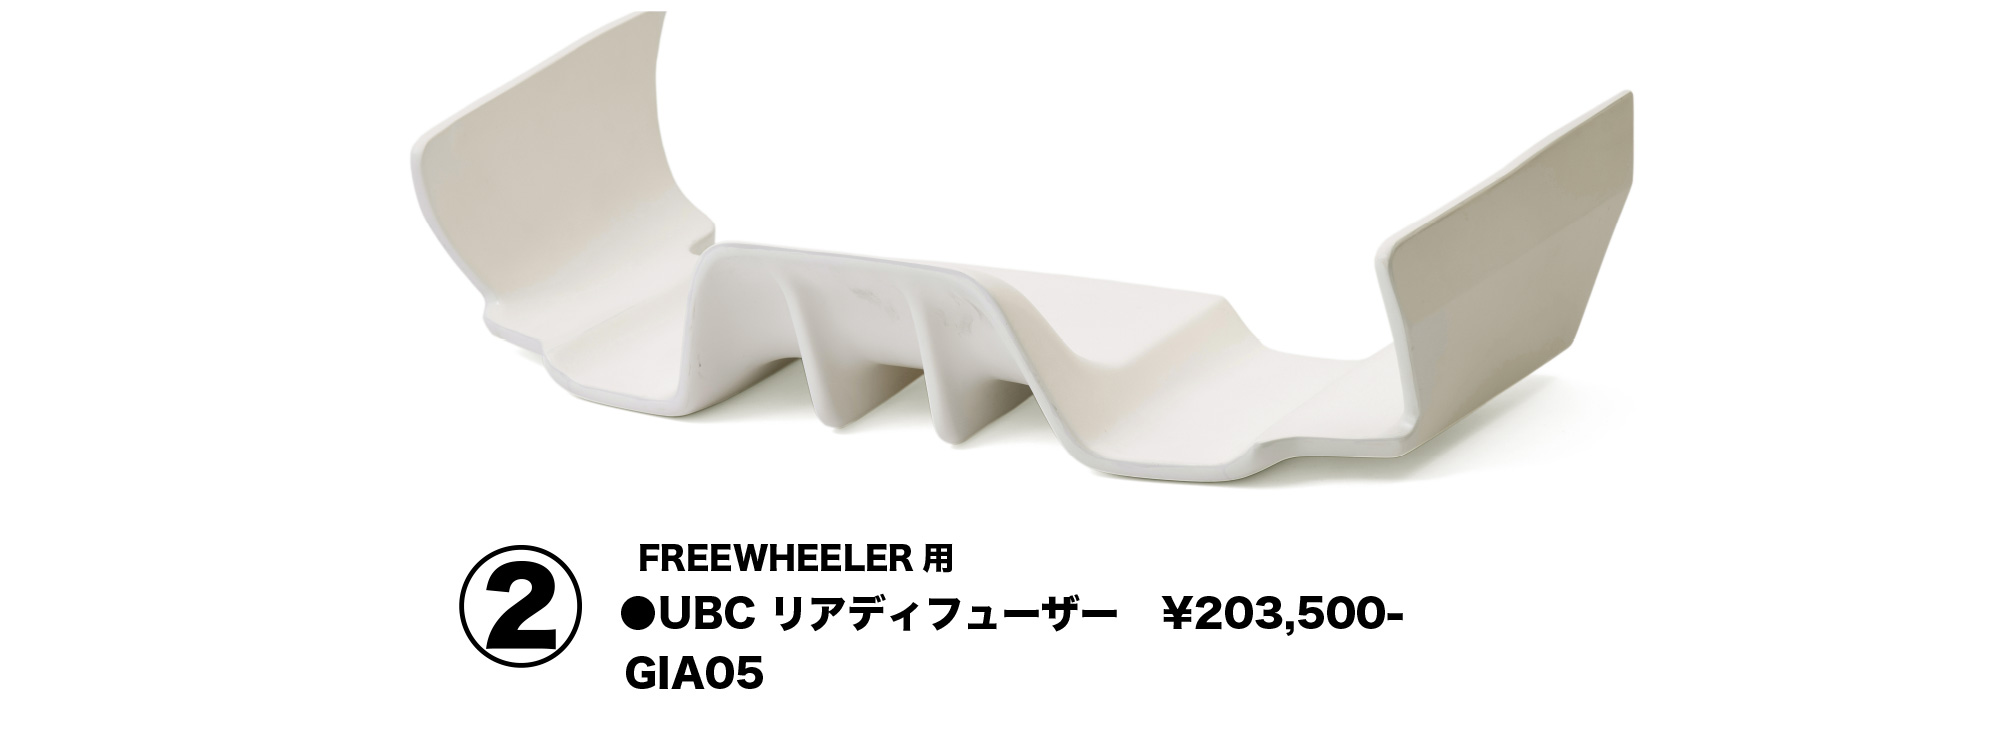 FREEWHEELER 用
UBC リアディフューザー　￥203,500
GIA05